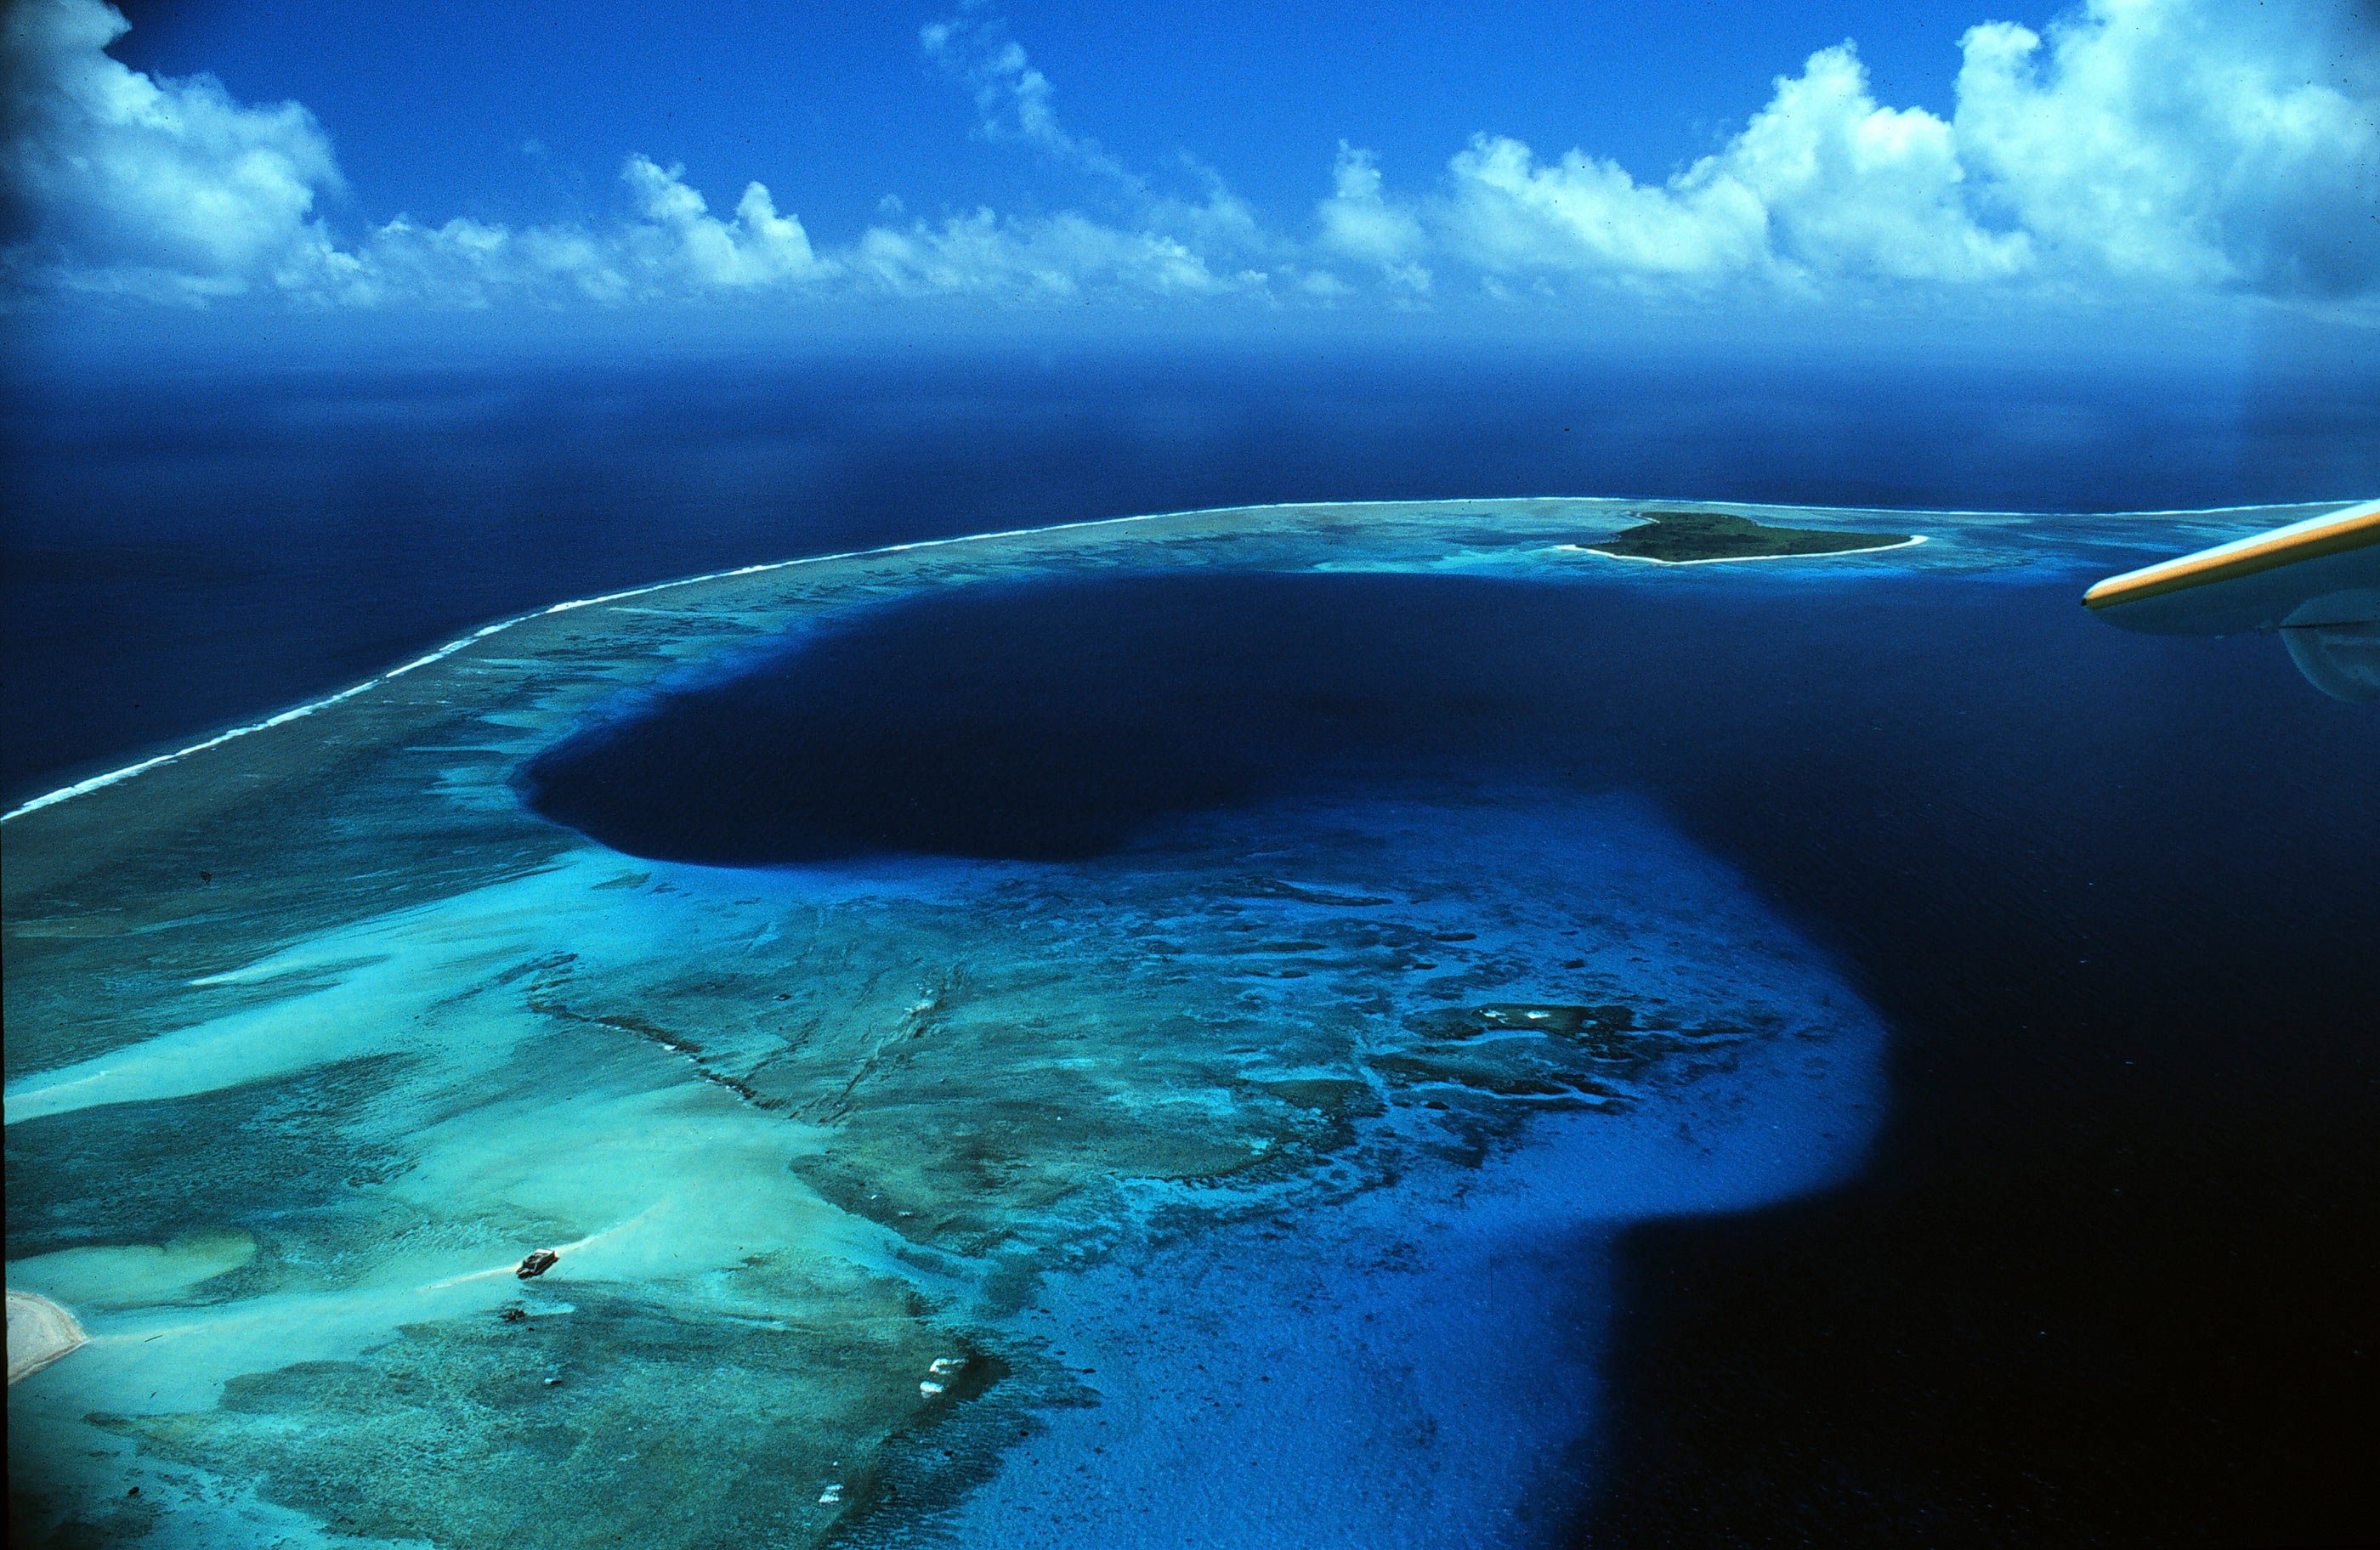 Время в тихом океане. Атолл бикини (Bikini Atoll), Маршалловы острова. Атолл на Маршалловых островах. Маршалловы острова АТО. Атолле бикини в тихом океане.